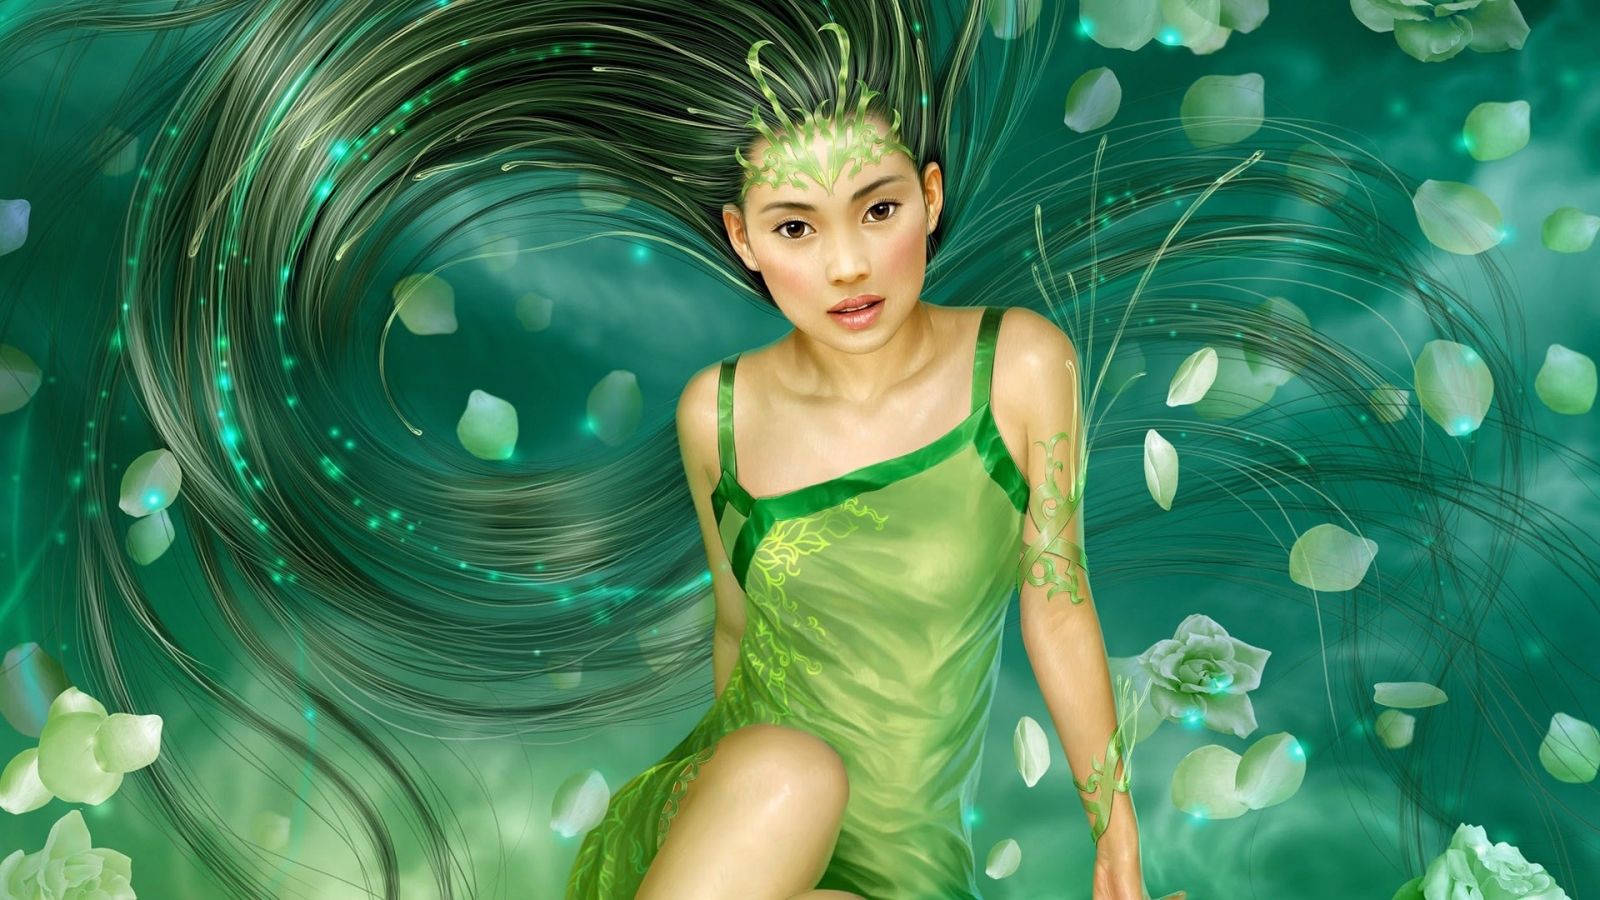 Fantasy Girl Green for 1600 x 900 HDTV resolution